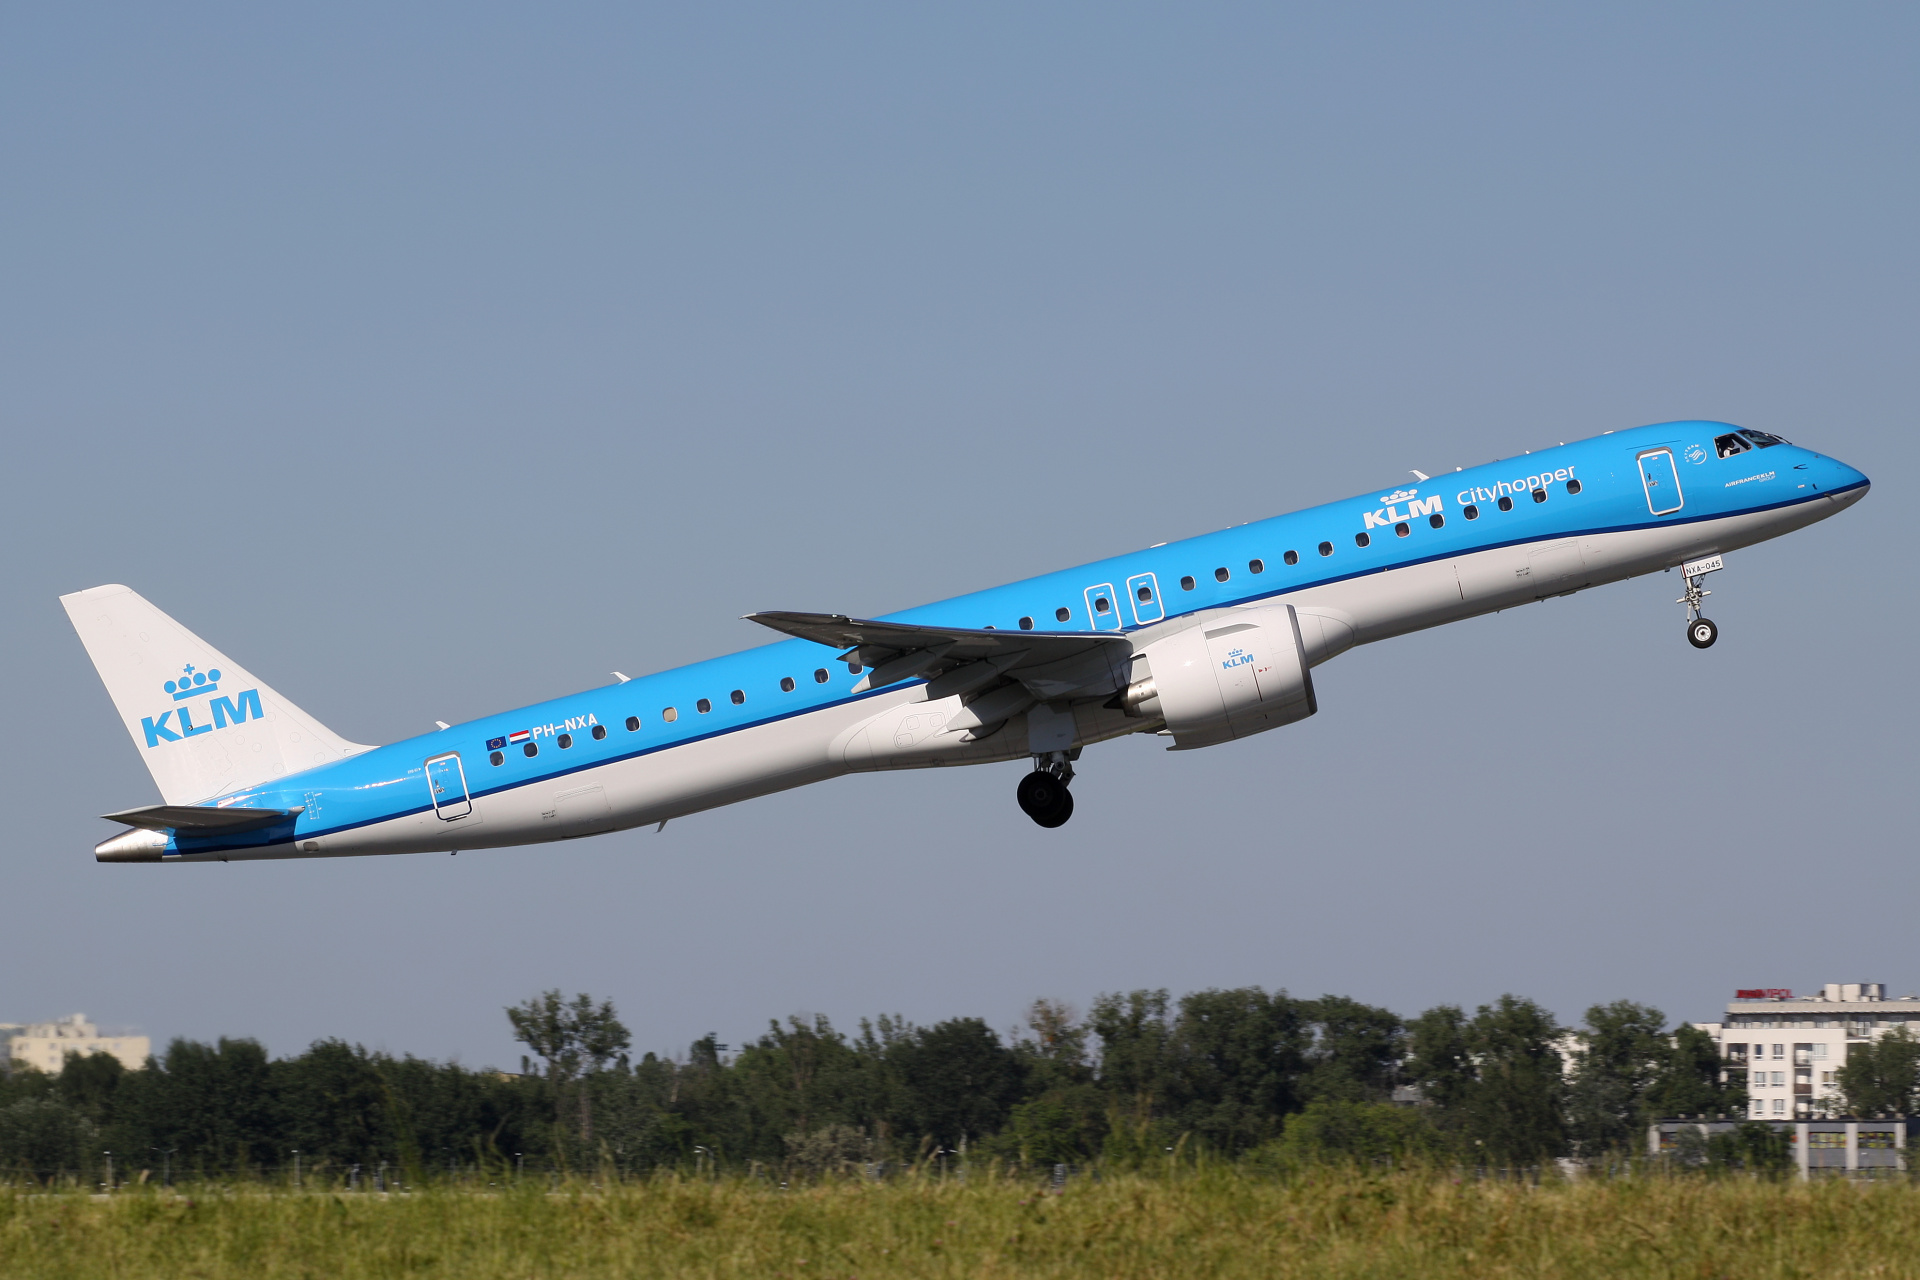 PH-NXA (Samoloty » Spotting na EPWA » Embraer E195-E2 » KLM Cityhopper)